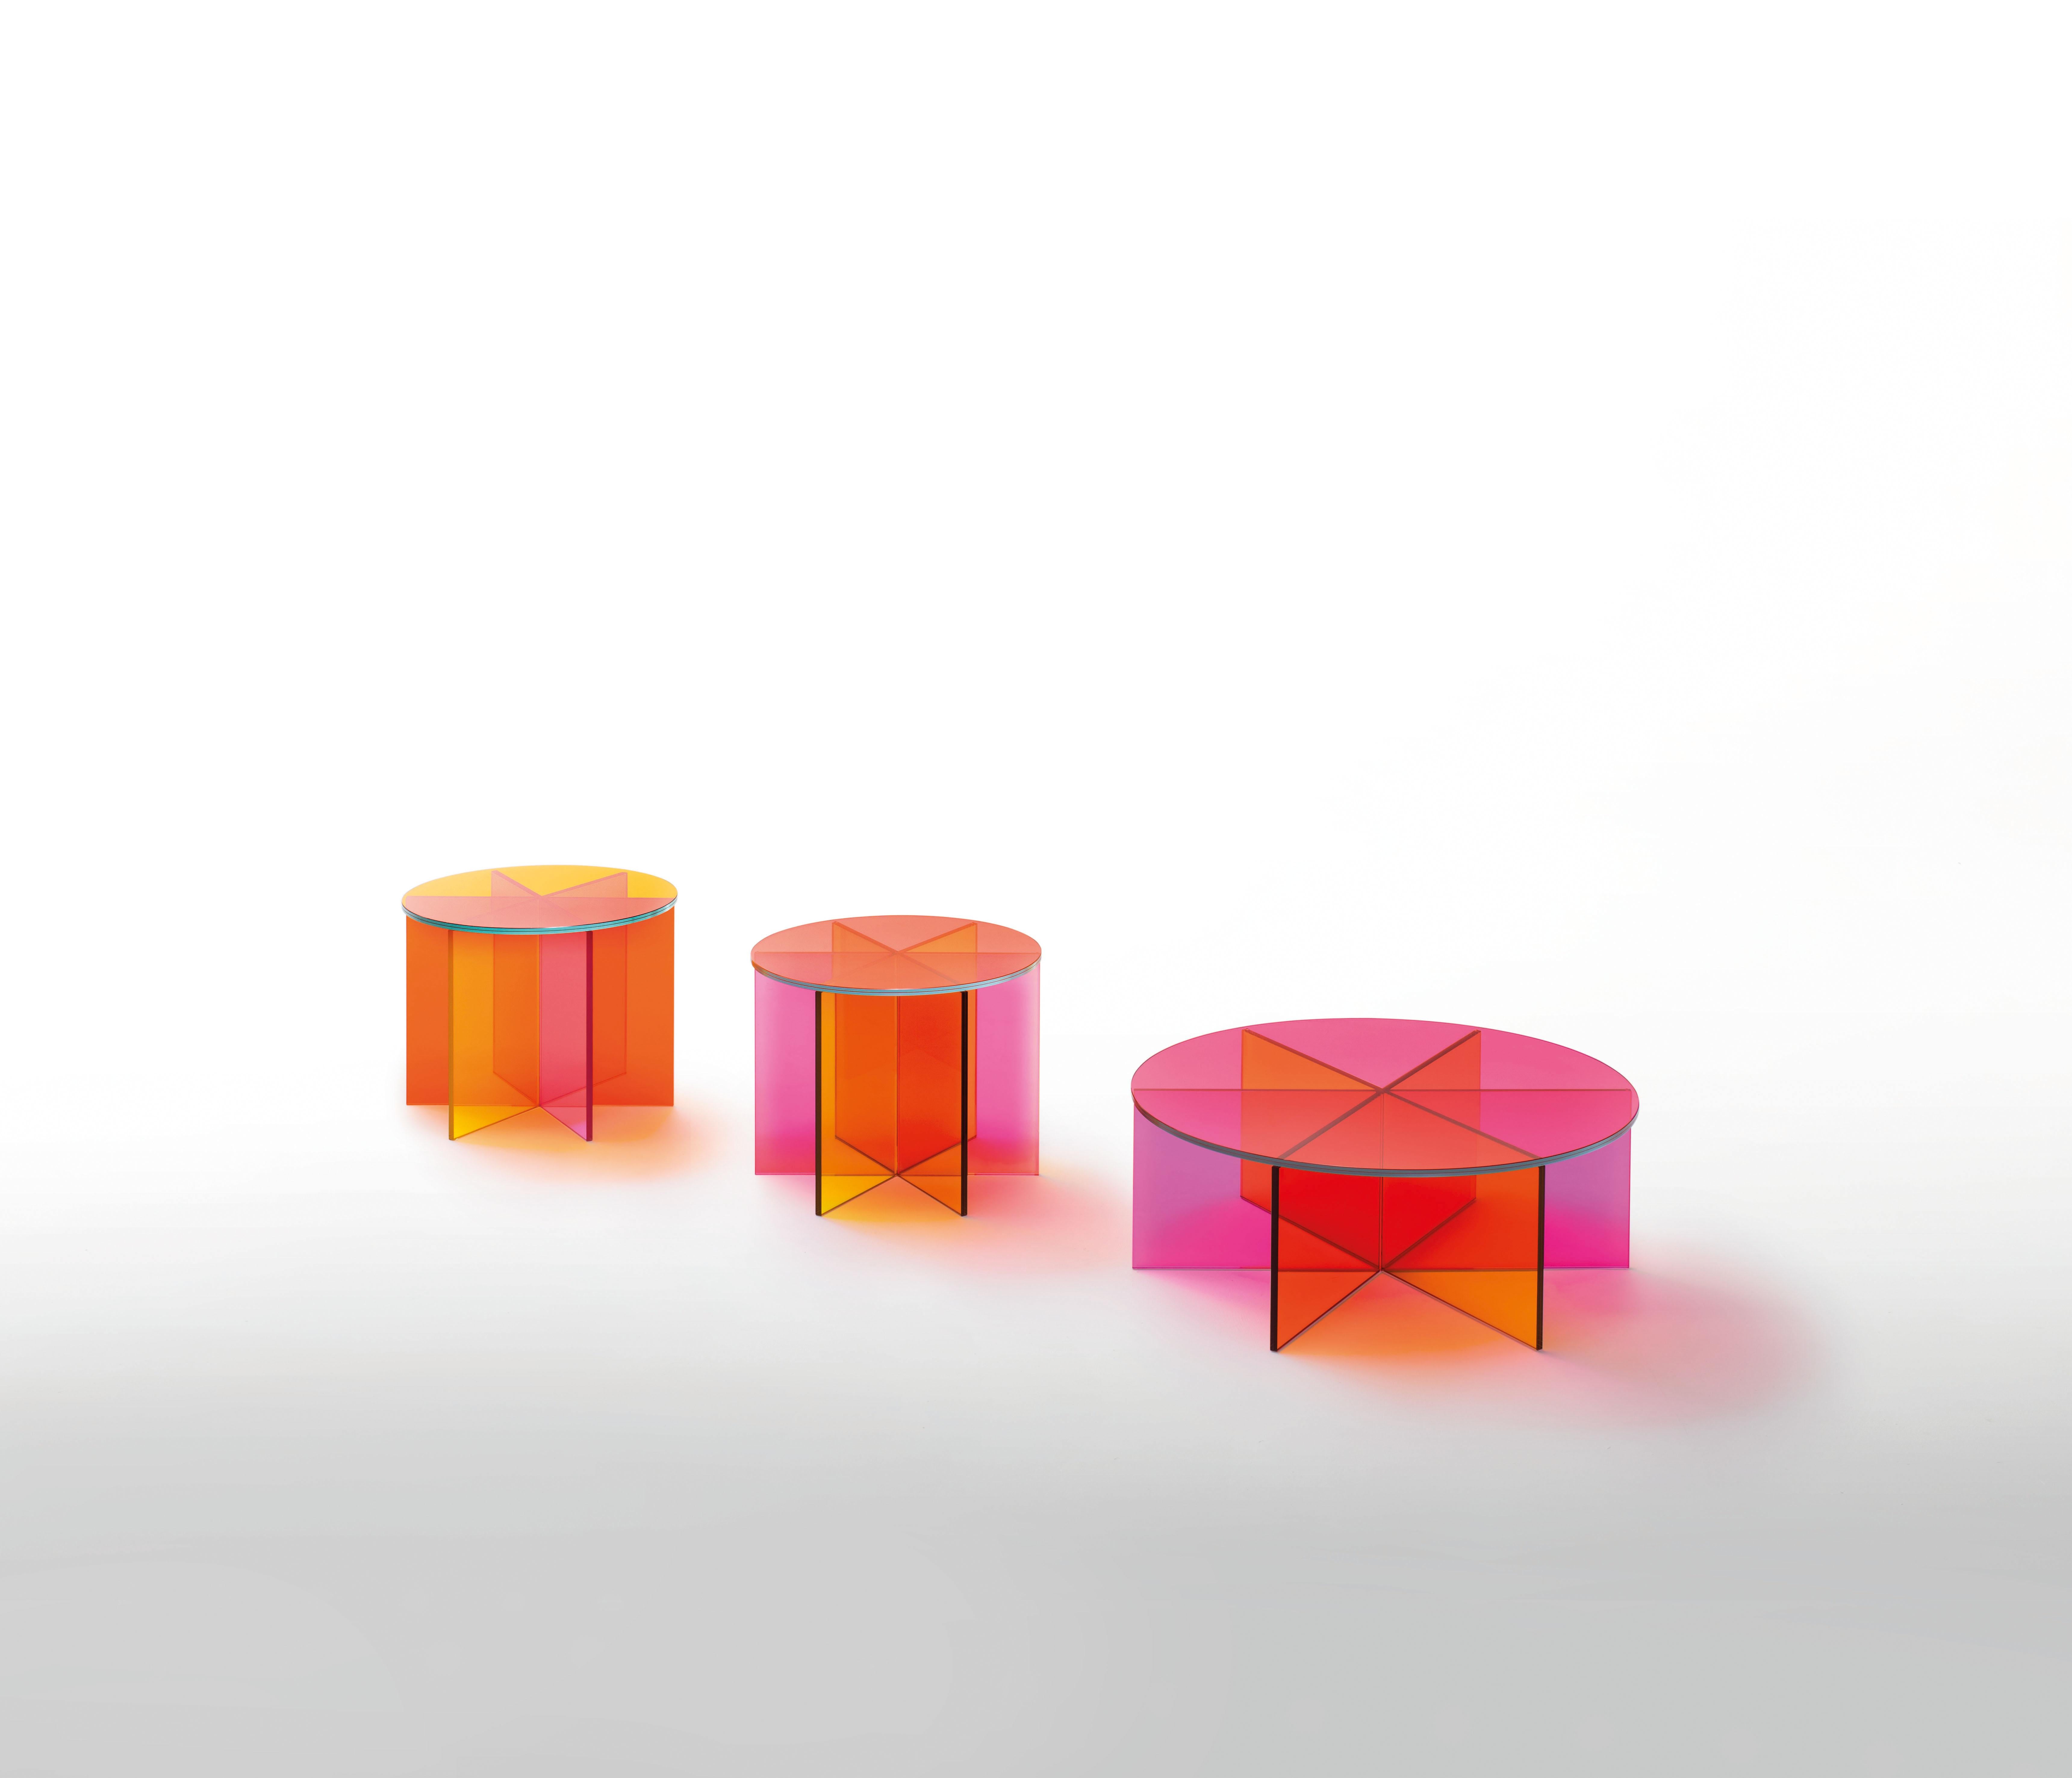 Der niedrige XXX-Tisch ist hier in transparentem rosa, orangefarbenem und gelbem Glas und in der großen Ausführung der beiden Tische abgebildet. Niedriger Tisch aus transparentem rosa, orangefarbenem und gelbem Glas. Der Sockel wird durch das